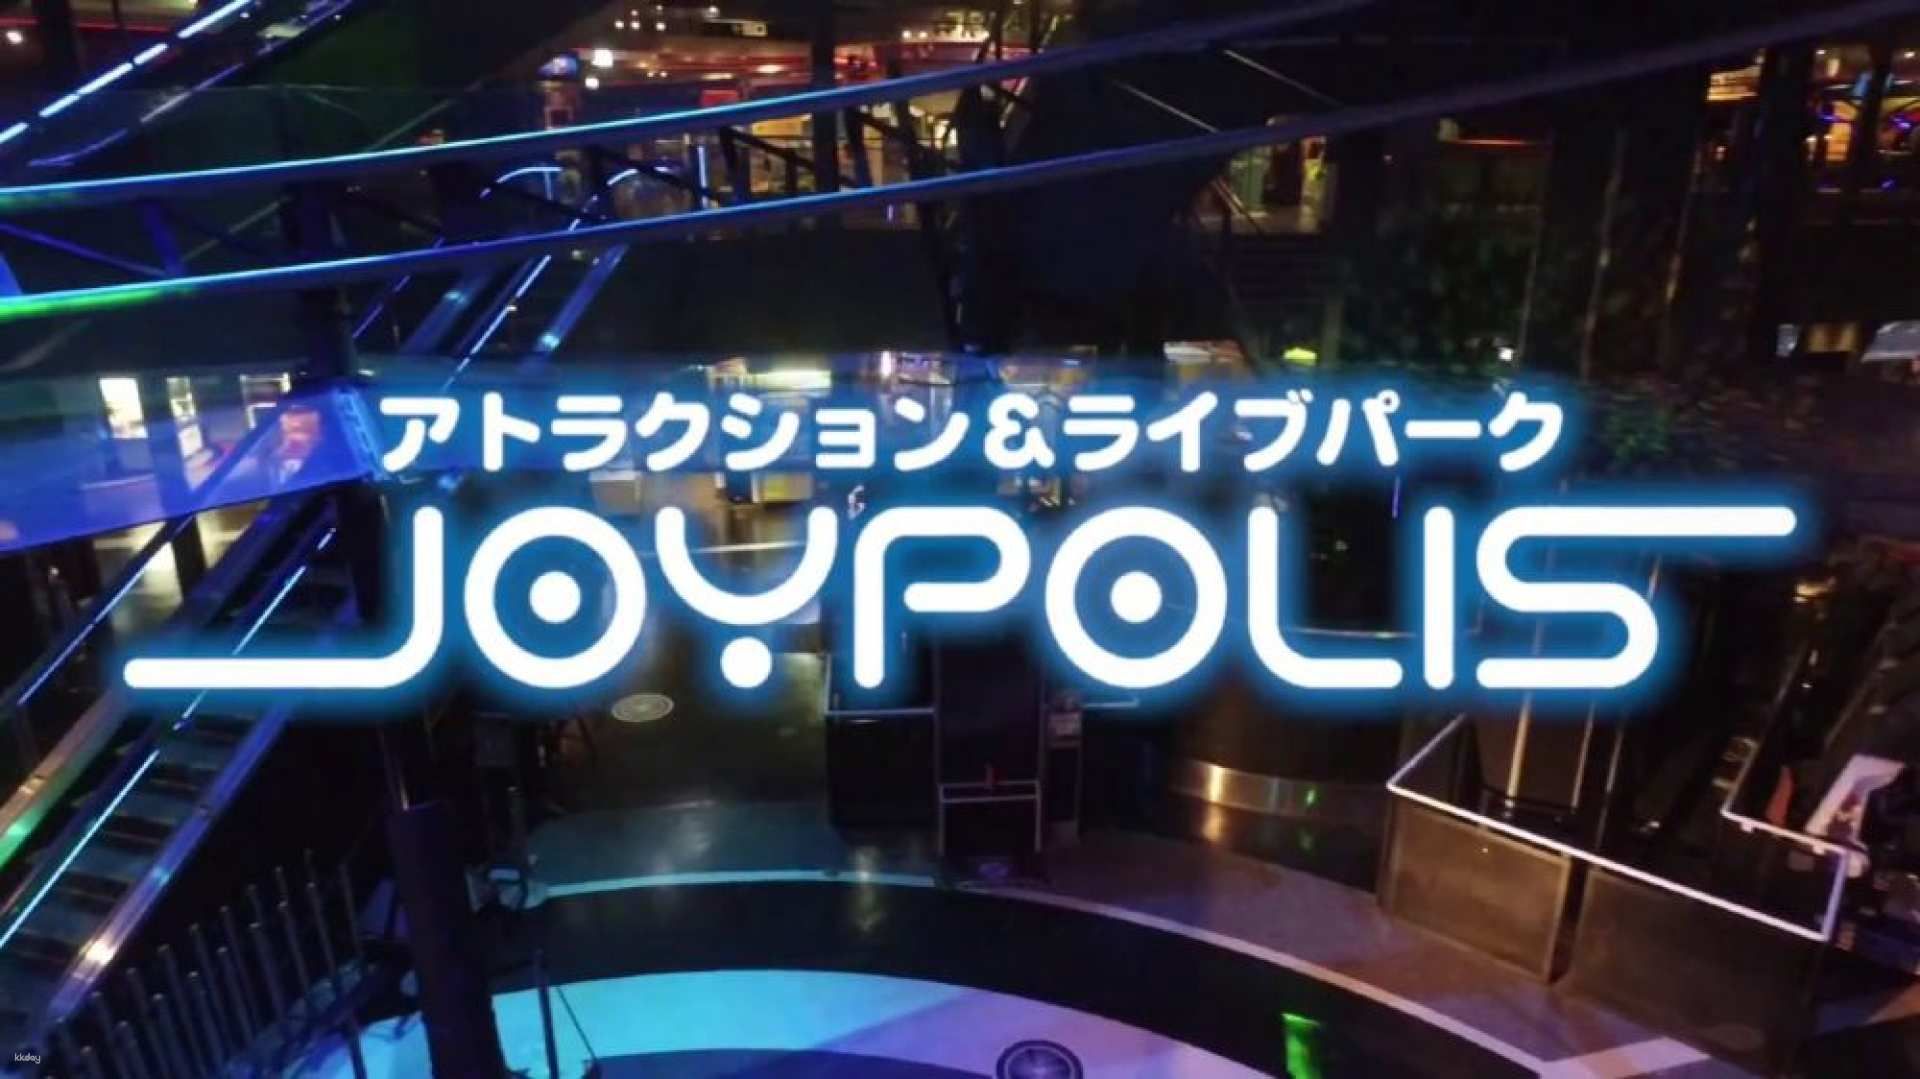 Tokyo Joypolis